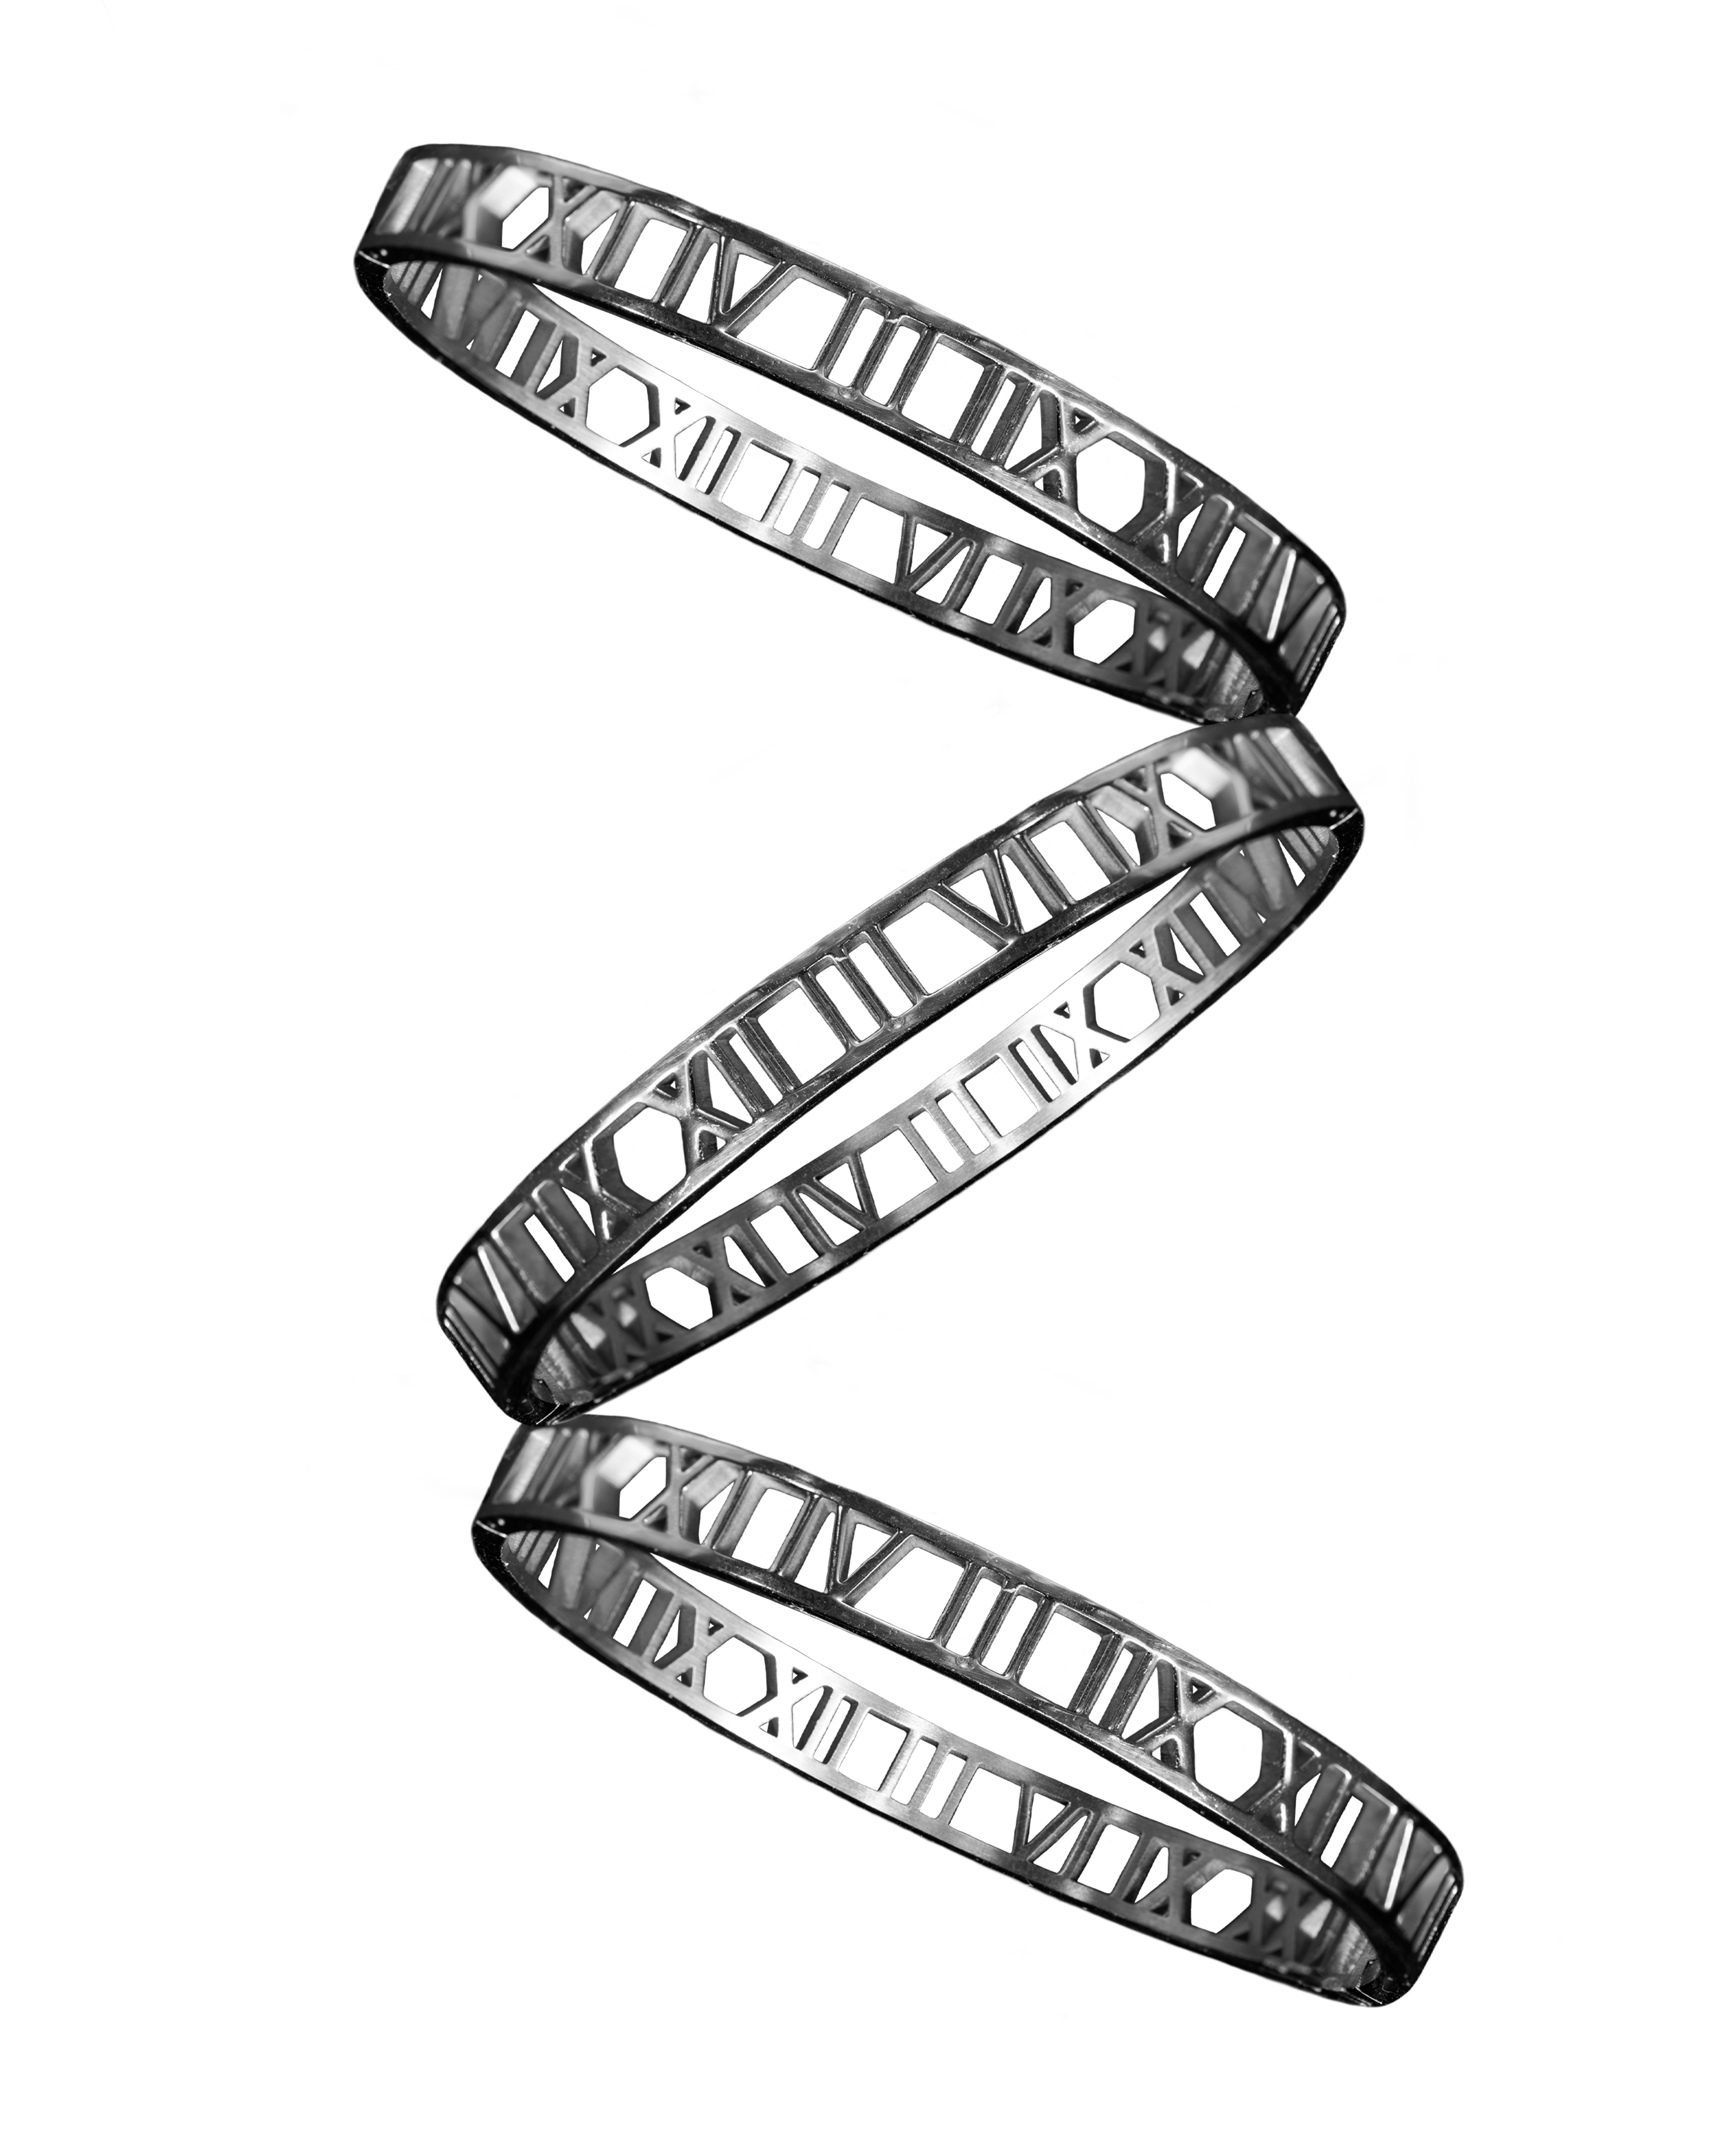 Tres brazaletes colocados en zig zag de forma vertical, son plateados y se encuentran en un fondo blanco 